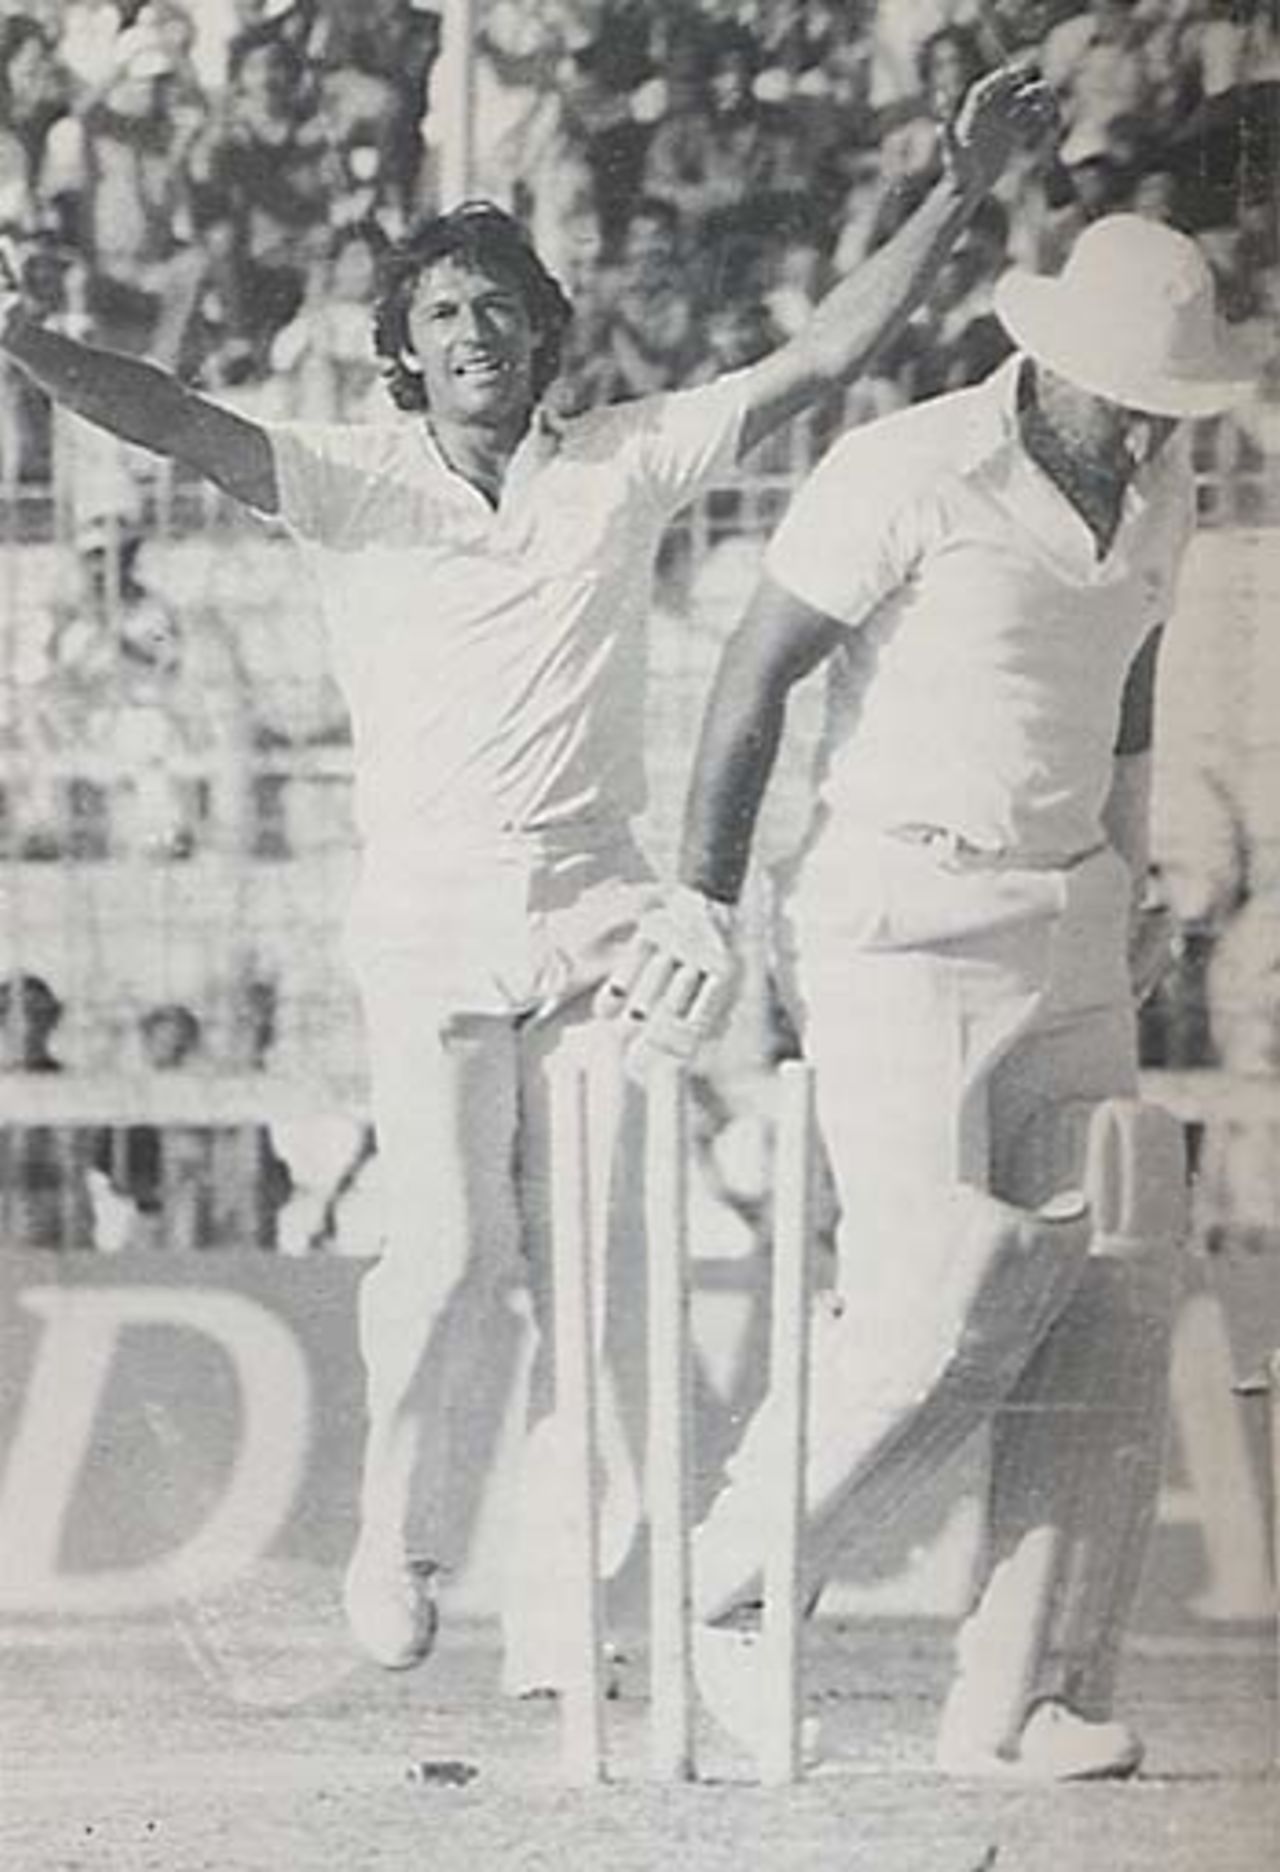 Sunil Gavaskar bowled Imran Khan 67, Pakistan v India, 1982-83